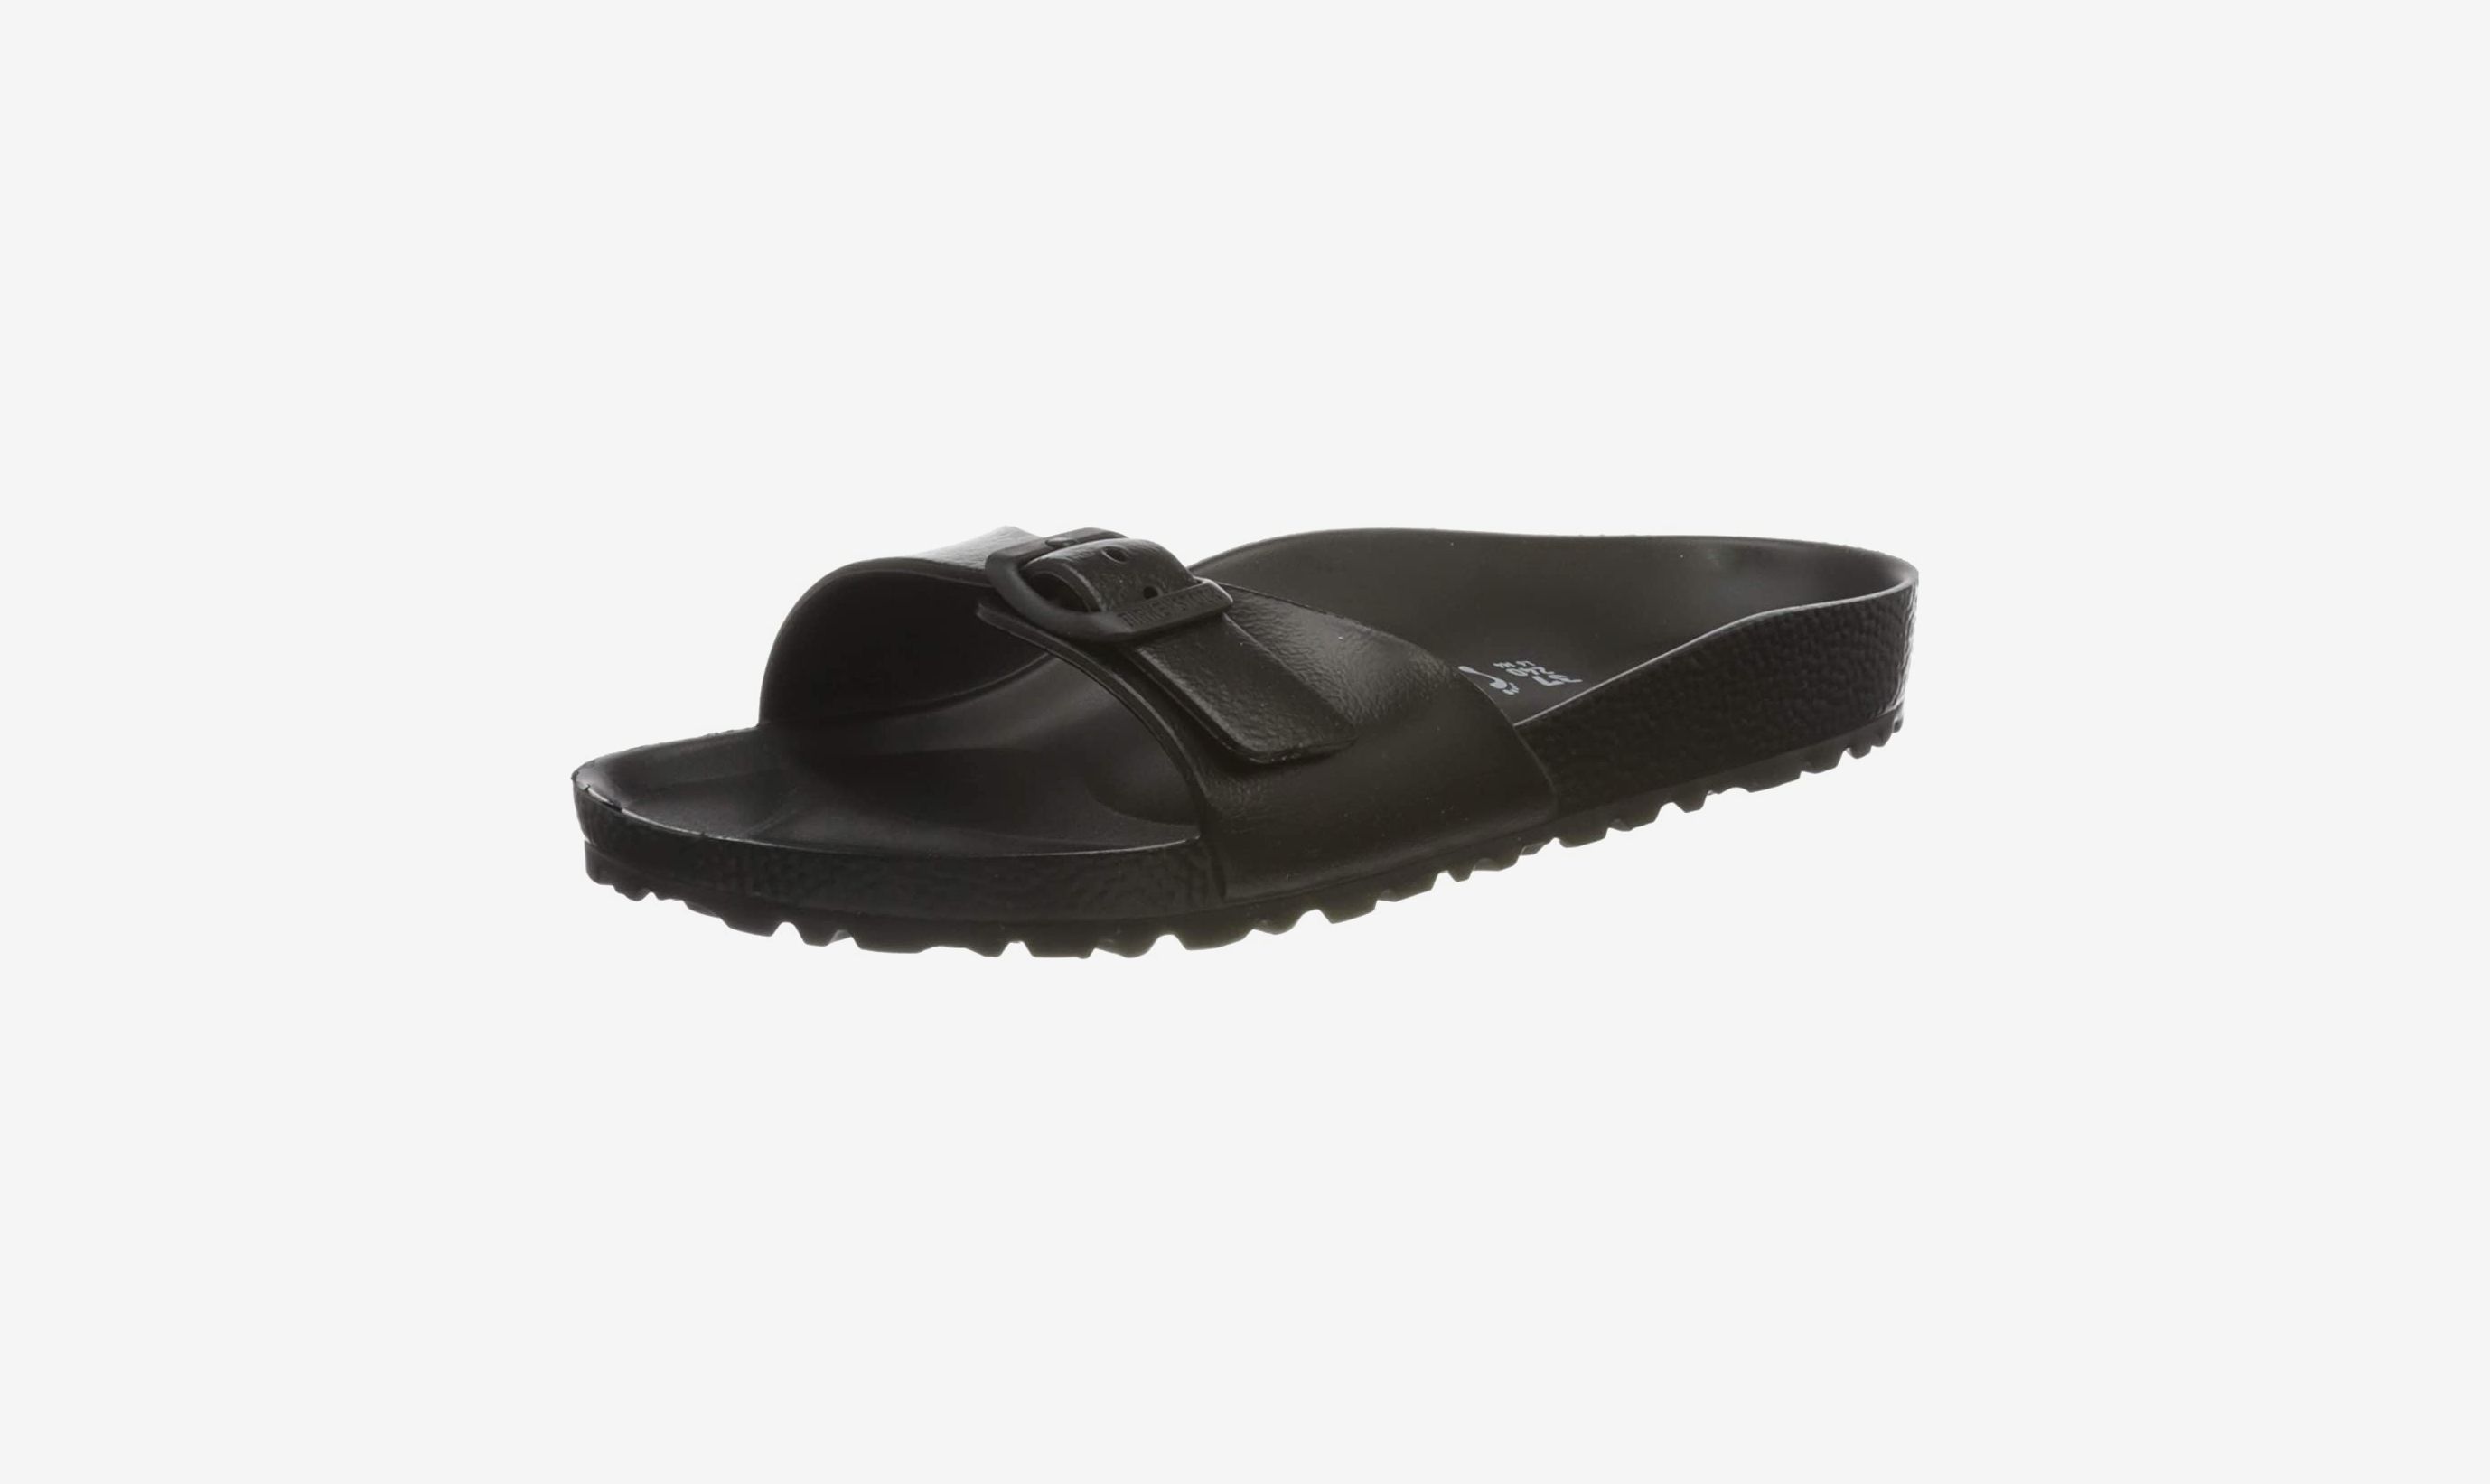 Images for Men's Black Slippers - Black | Mens sandals fashion, Mens  leather sandals, Leather slippers for men